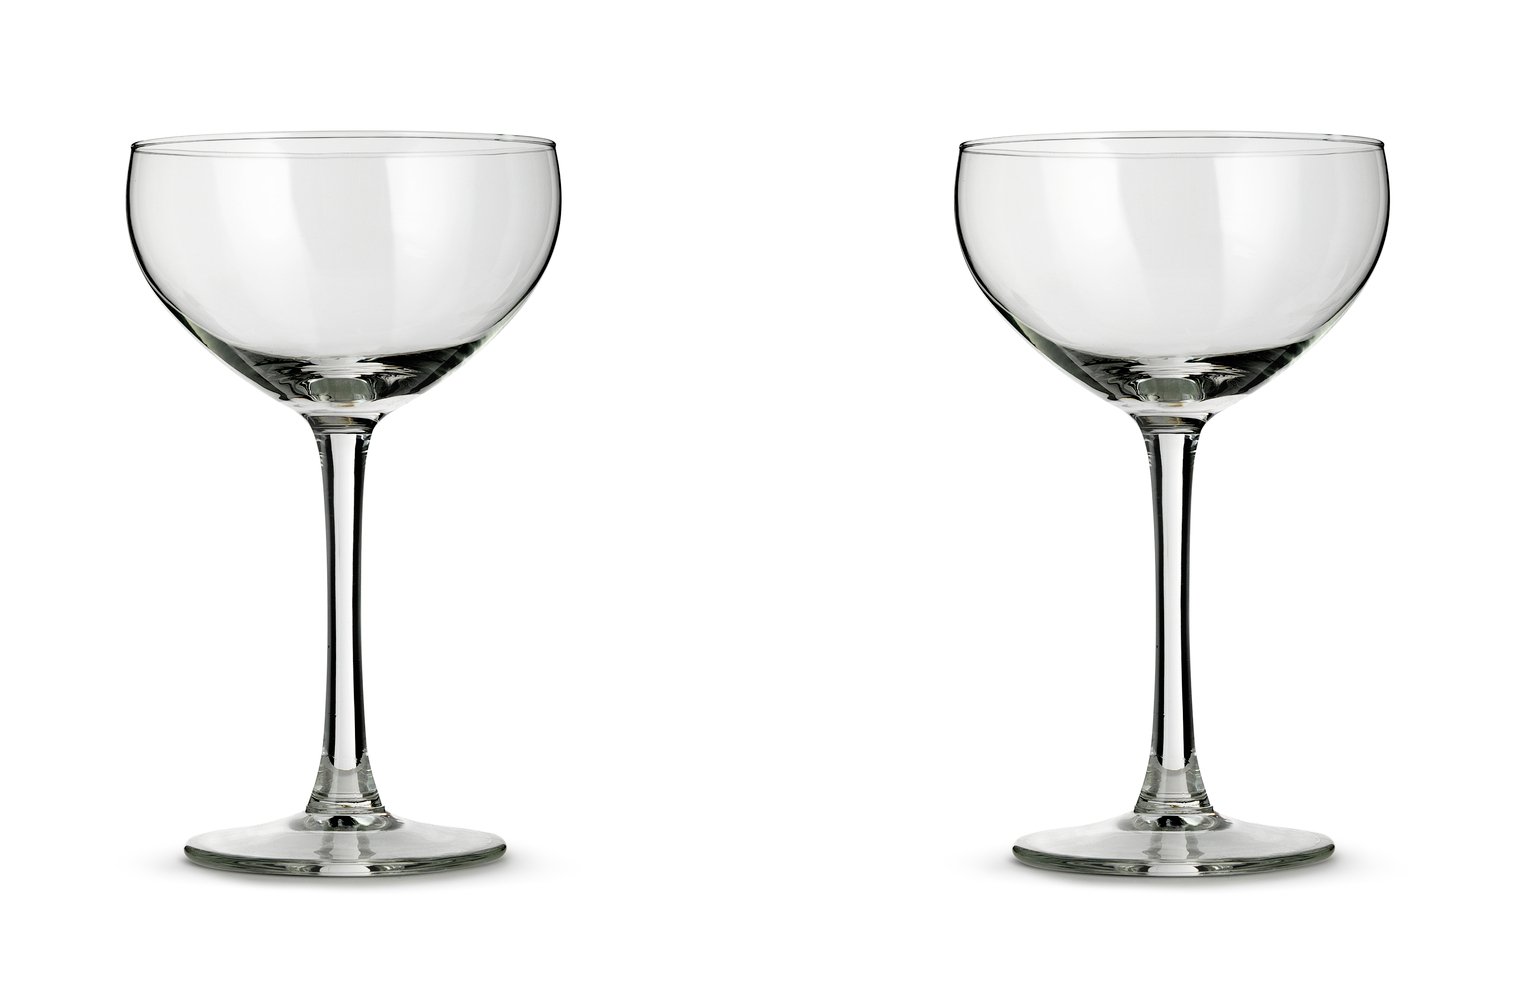 Habitat Portofino Set of 2 Champagne Coupe Glasses